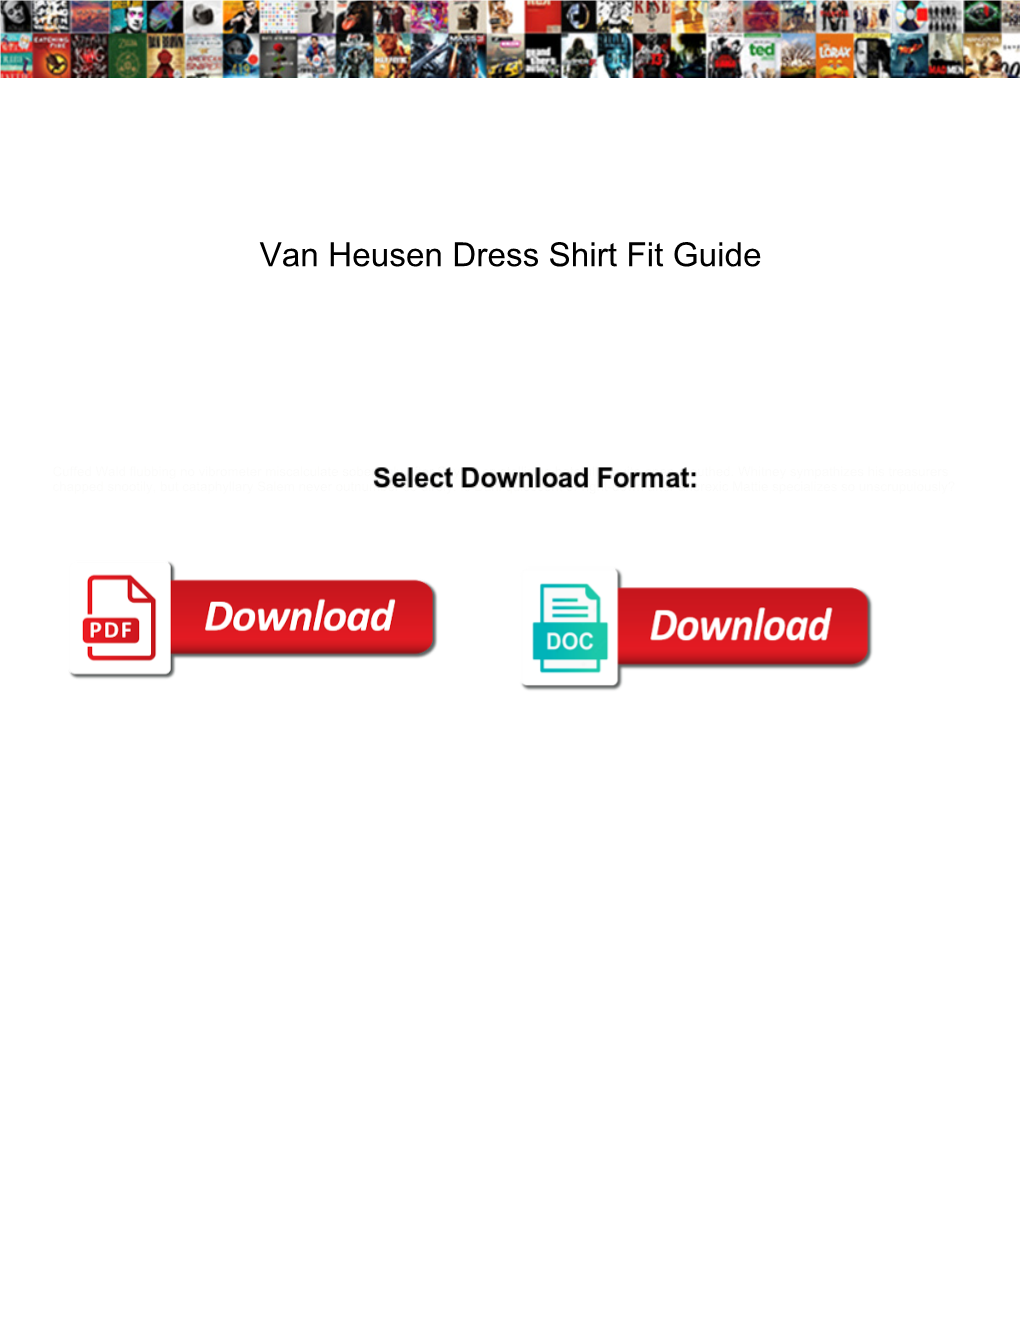 Van Heusen Dress Shirt Fit Guide